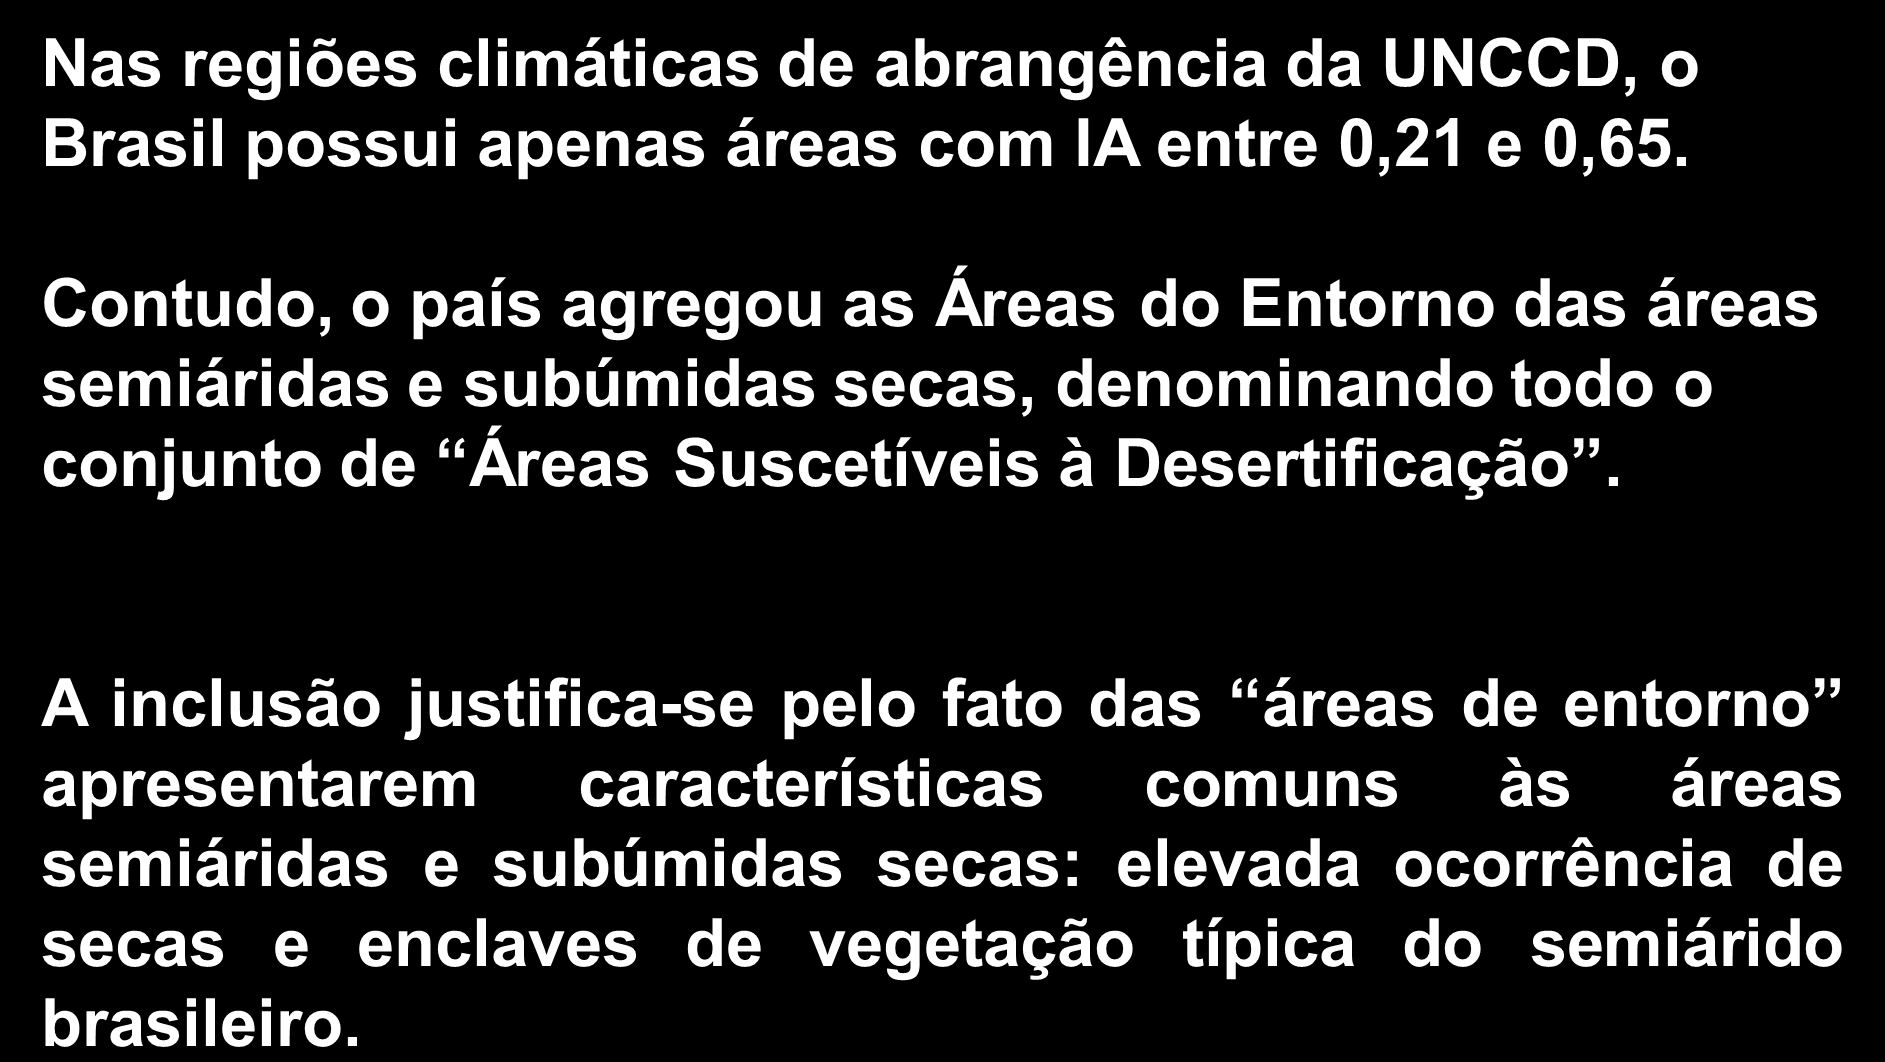 Áreas Suscetíveis à Desertificação (ASD) Nas regiões climáticas de abrangência da UNCCD, o Brasil possui apenas áreas com IA entre 0,21 e 0,65.